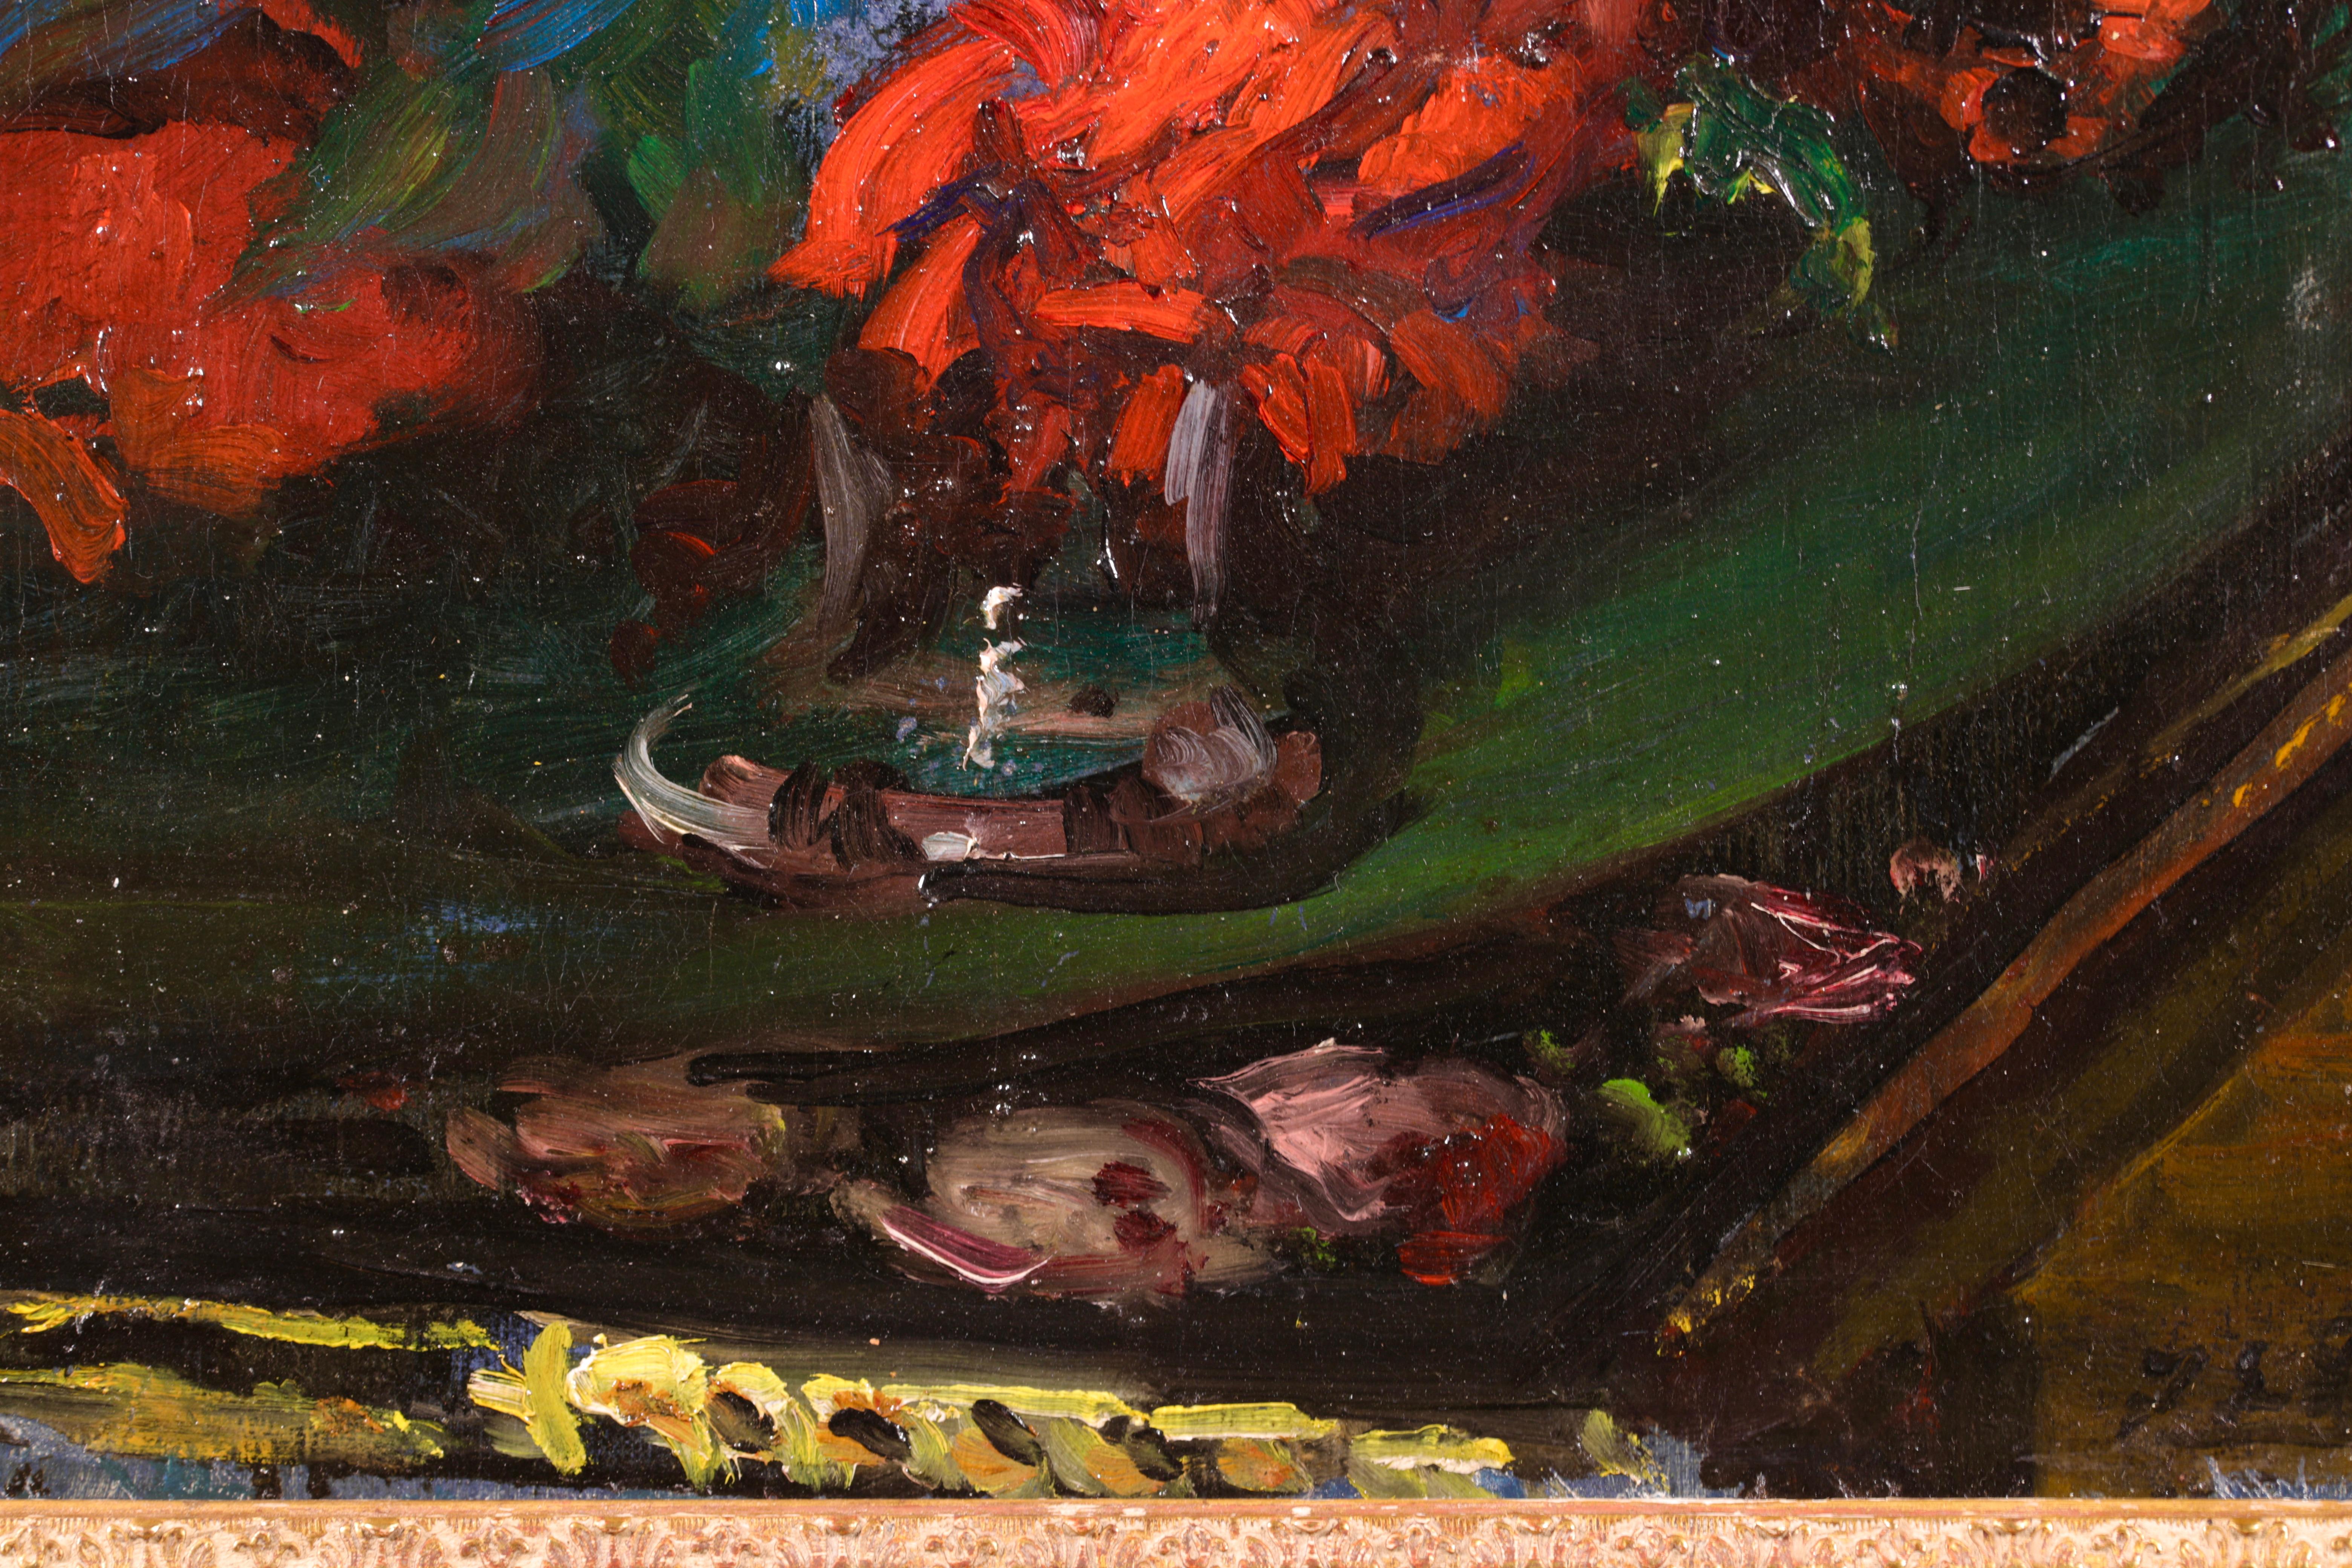 Les Roses de L'Etang - Post Impressionist Oil, Flowers by Jacques-Emile Blanche - Post-Impressionist Painting by Jacques Emile Blanche